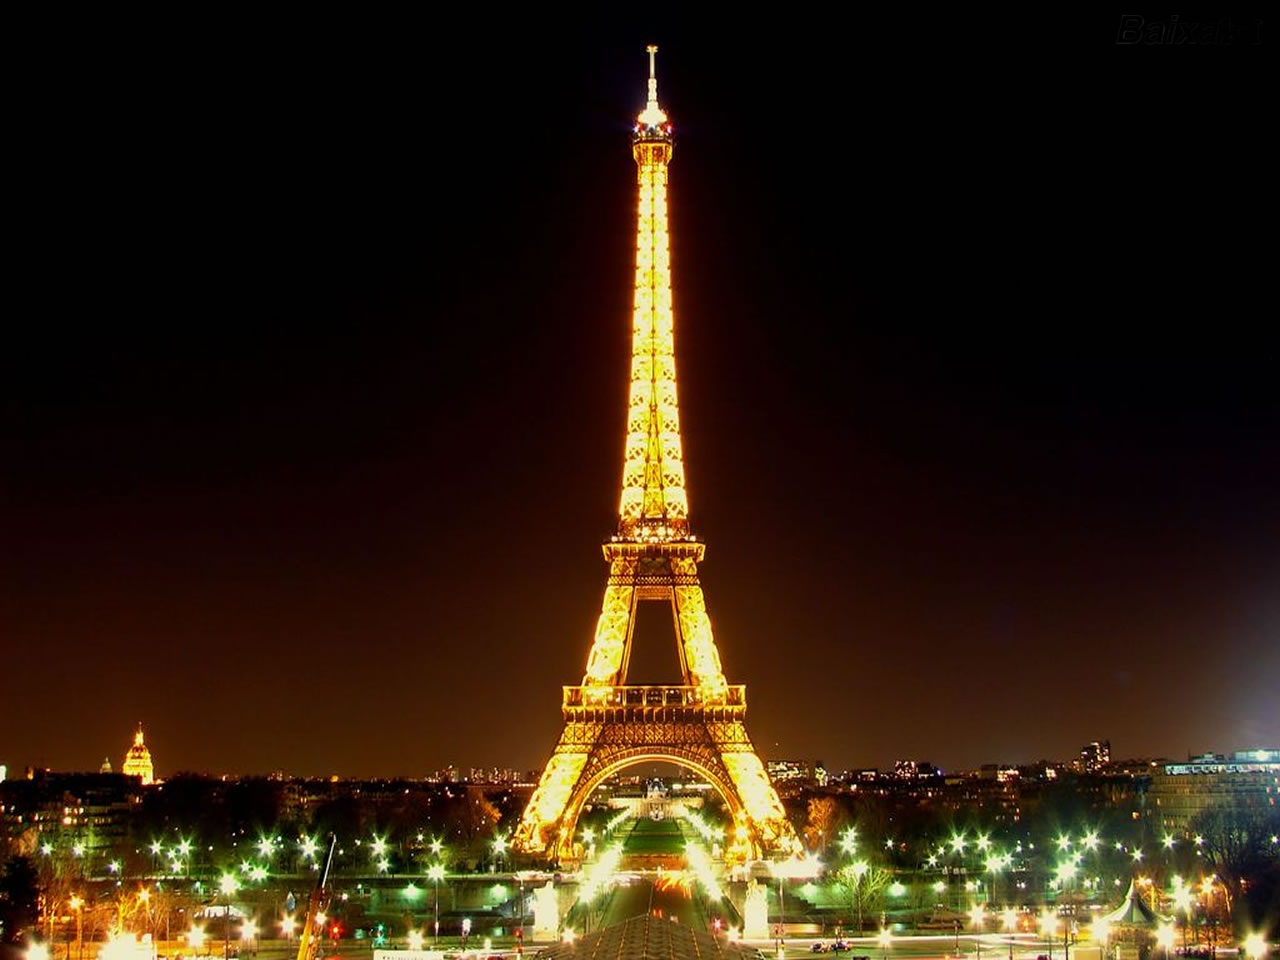 باريس عاصمة النور والحب والموضة - عالم المسافر